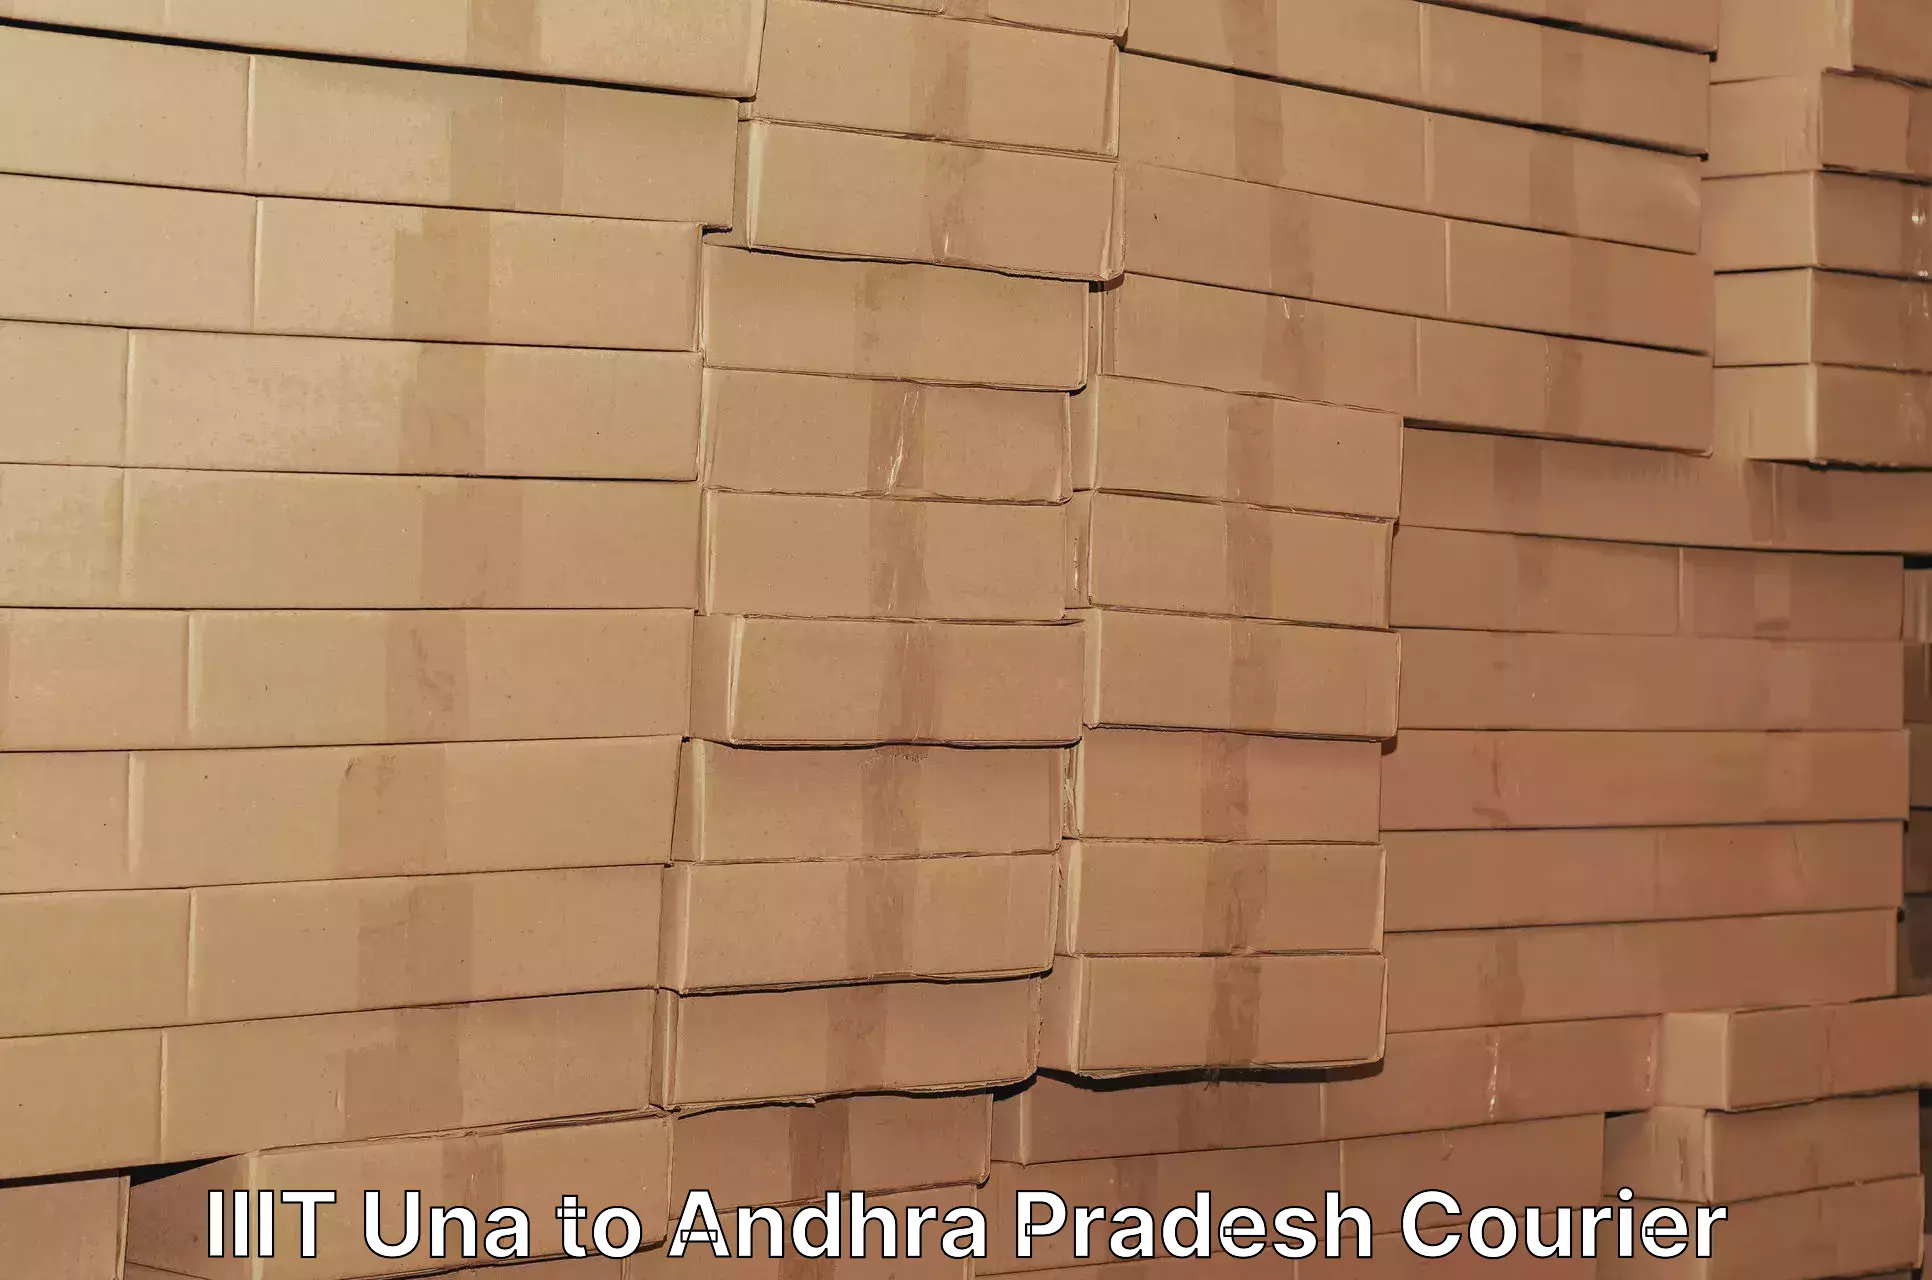 Door-to-door freight service IIIT Una to Andhra Pradesh